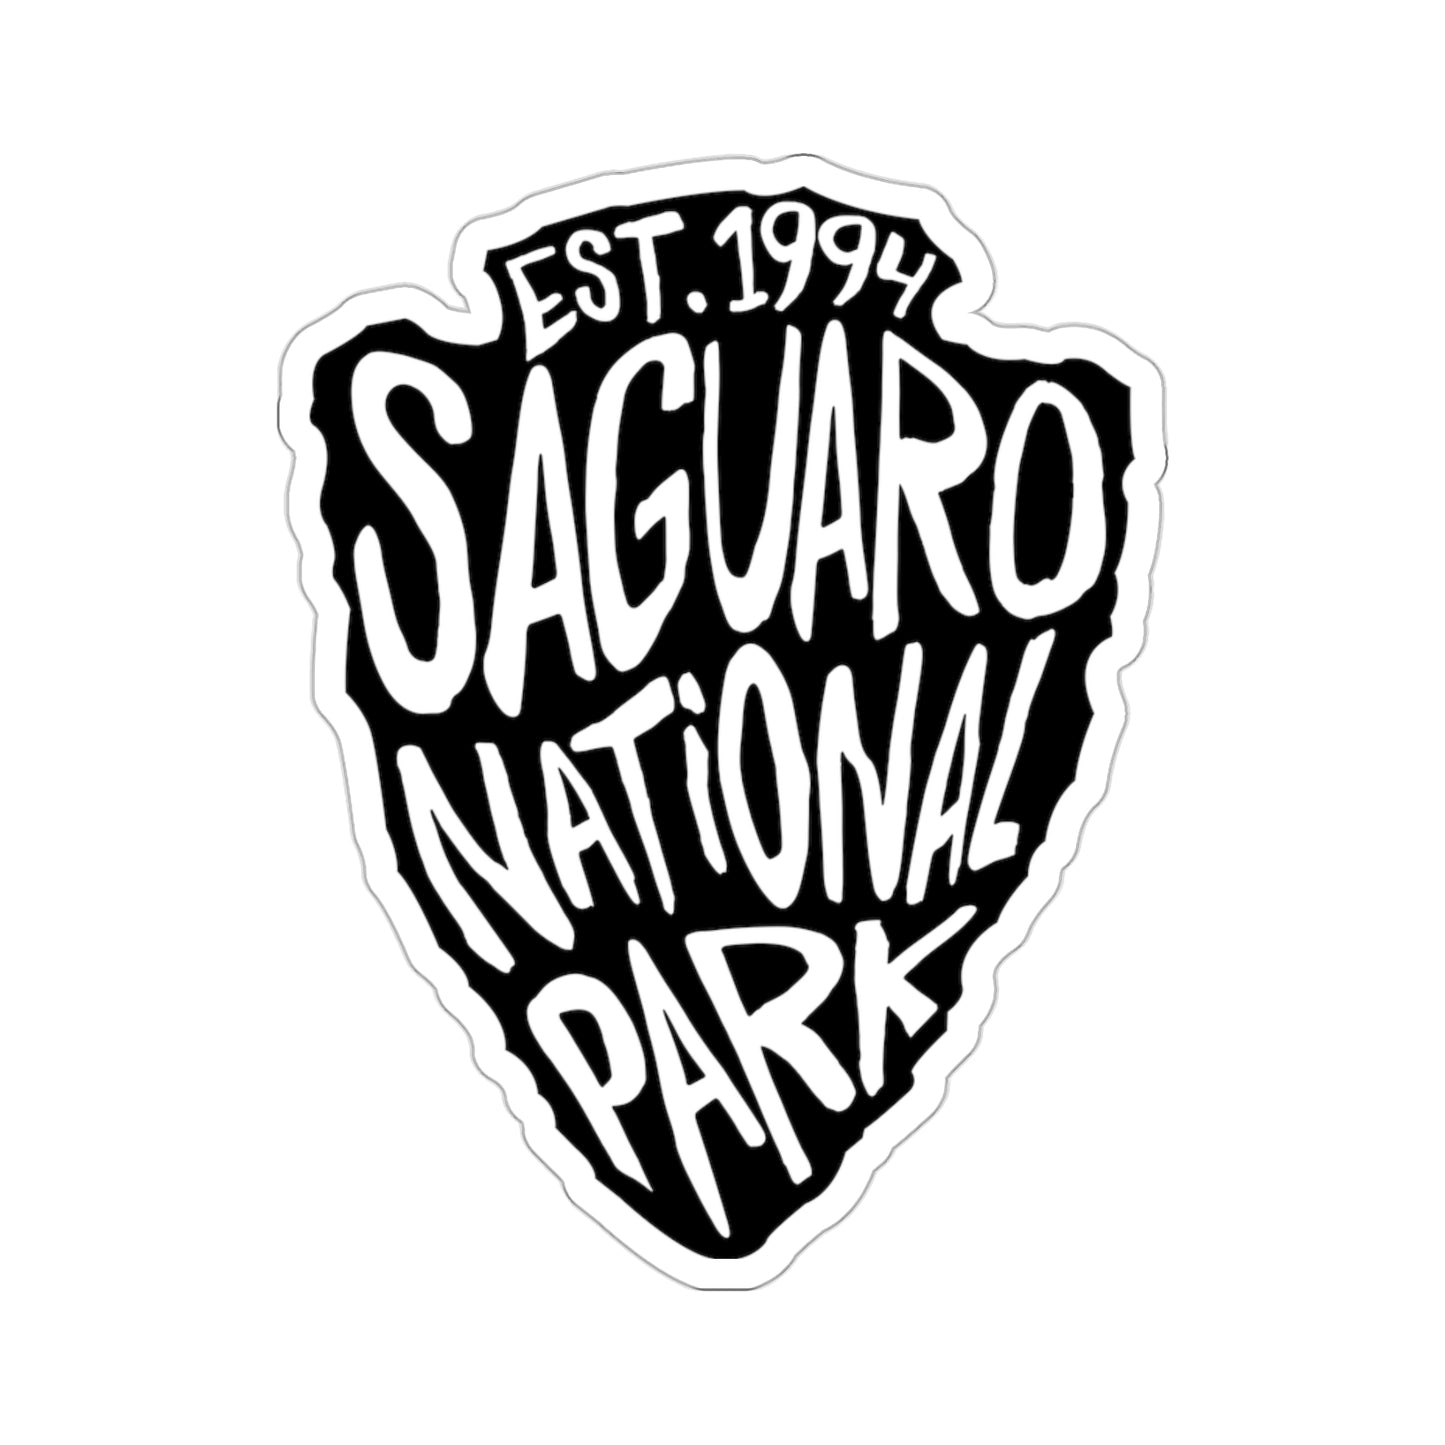 Saguaro National Park Sticker - Arrow Head Design